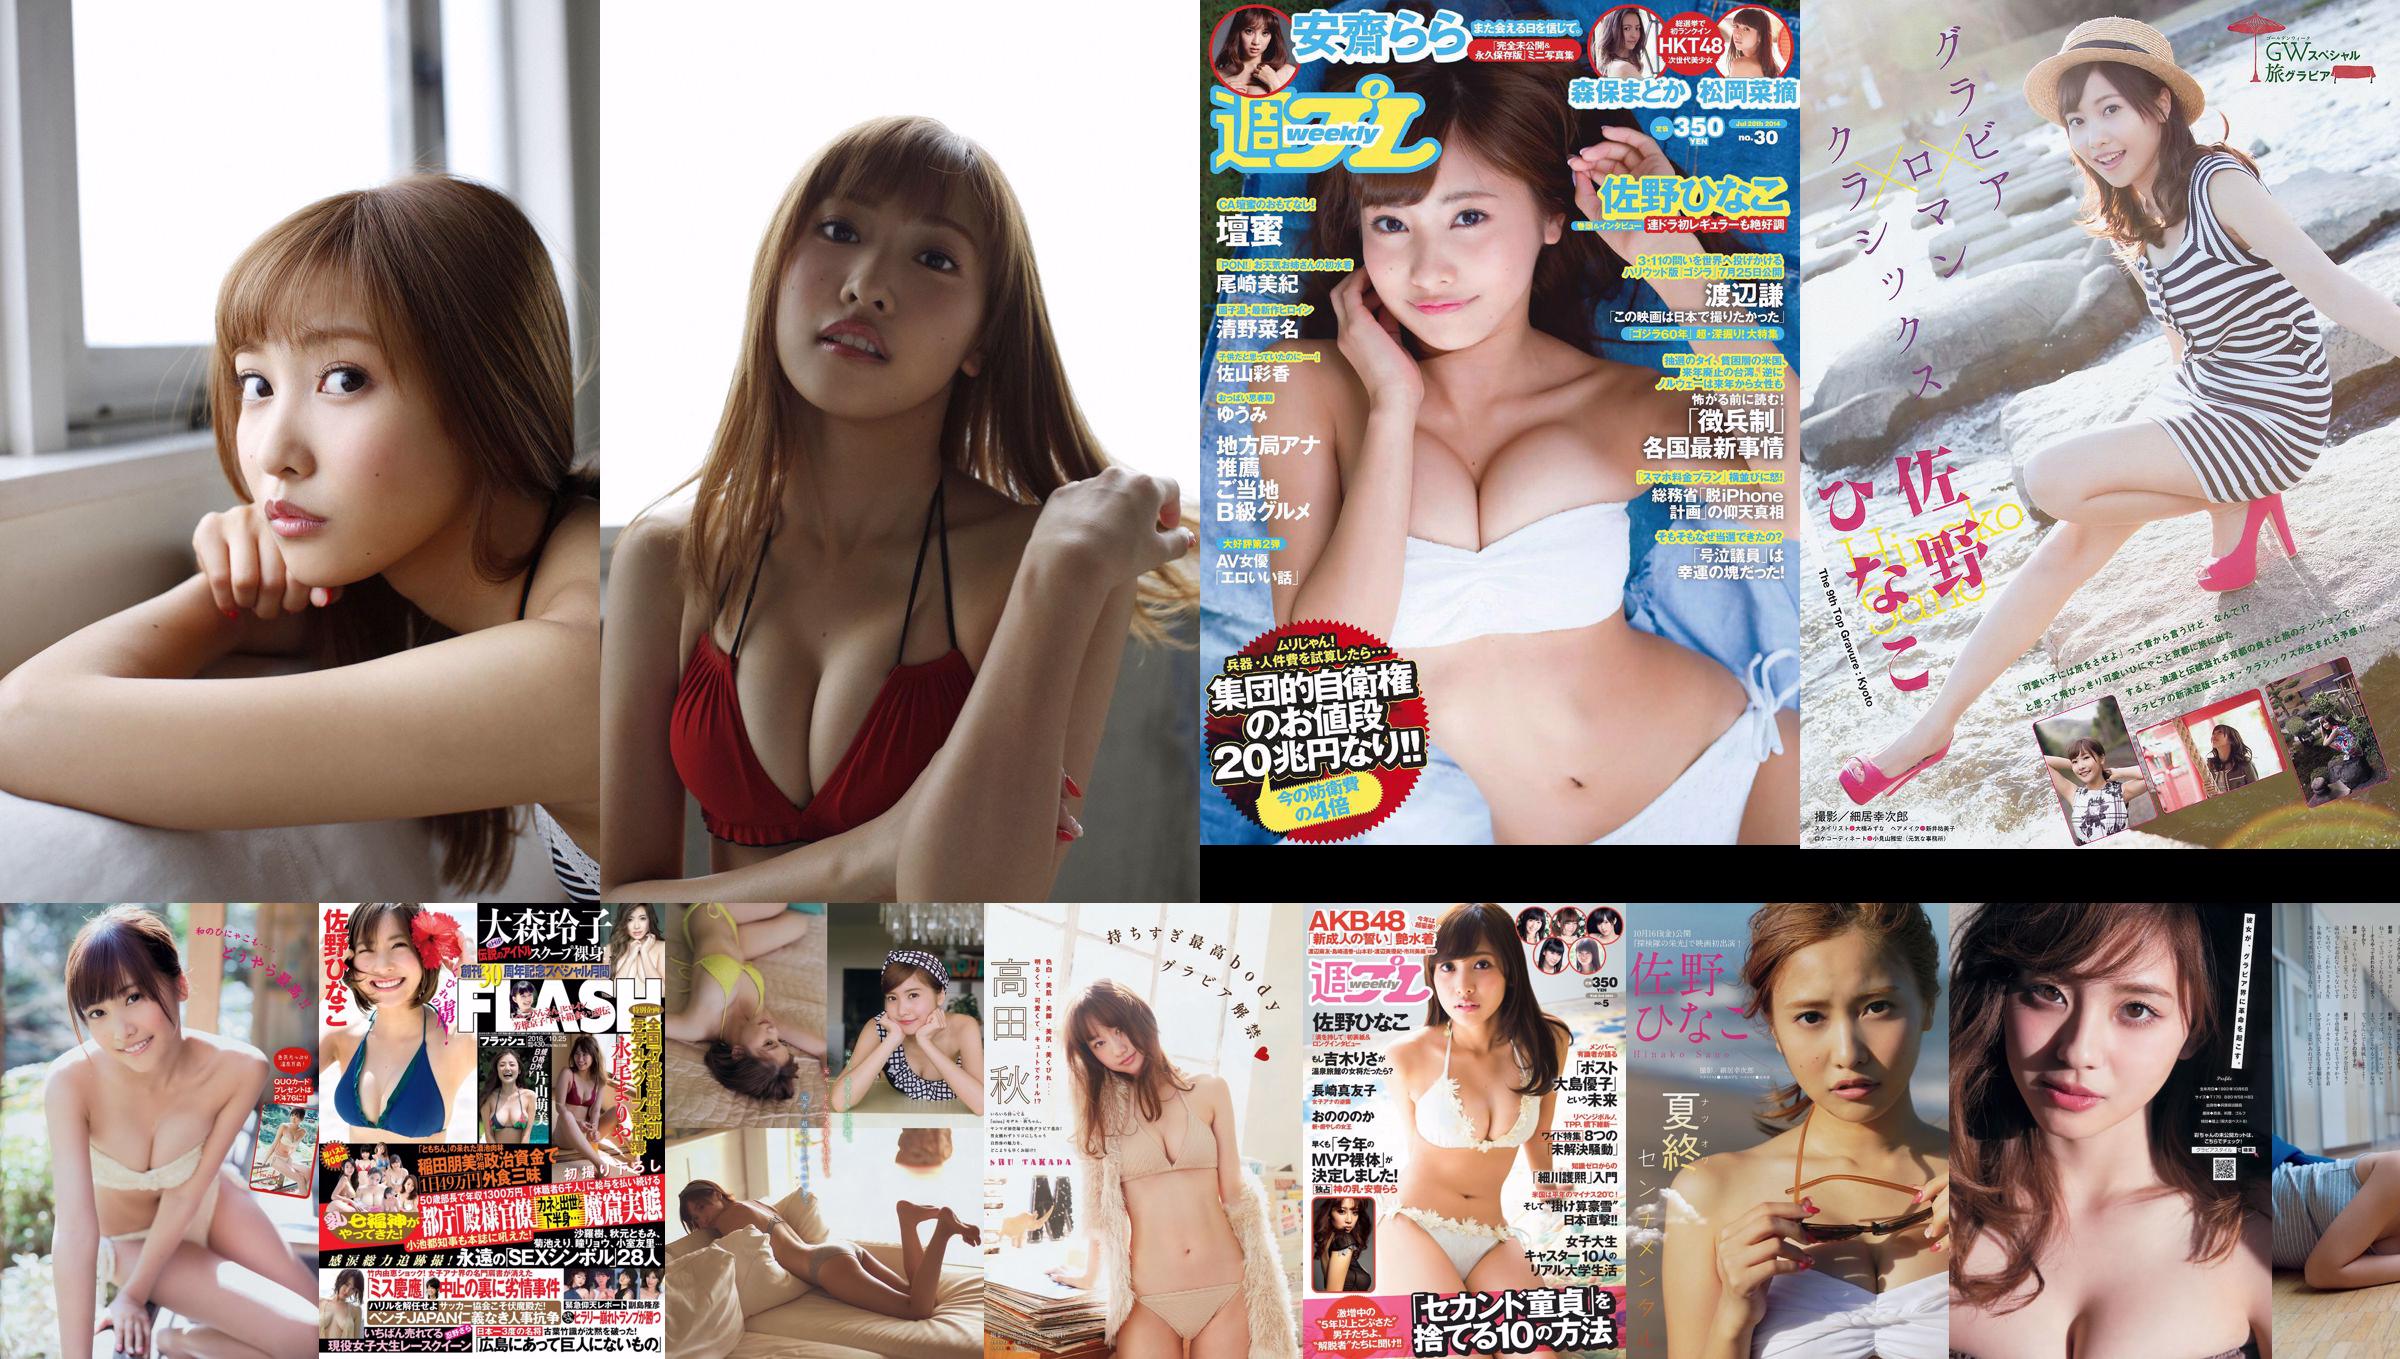 [Revista Young] Hinako Sano Miwako Kakei 2014 No.12 Fotografia No.0ba4b9 Página 1